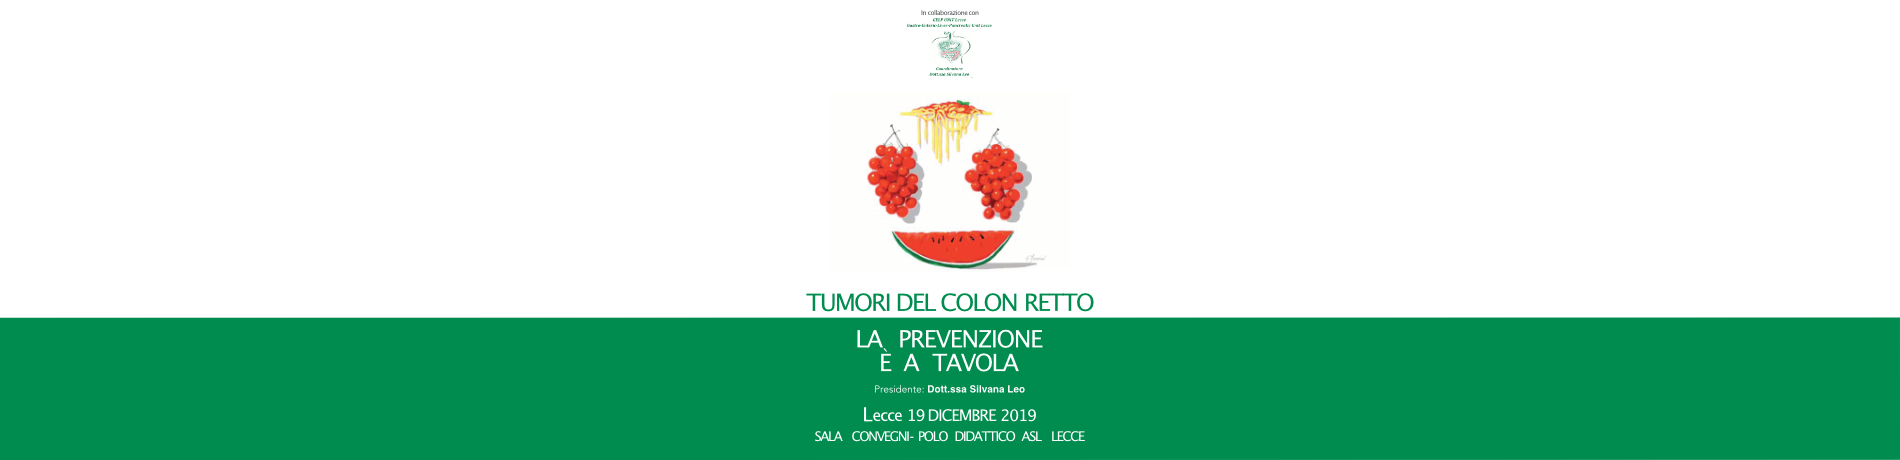 https://www.formedica.it/wp/wp-content/uploads/2019/11/2019_12_19_Tumori-del-colon-retto.jpg